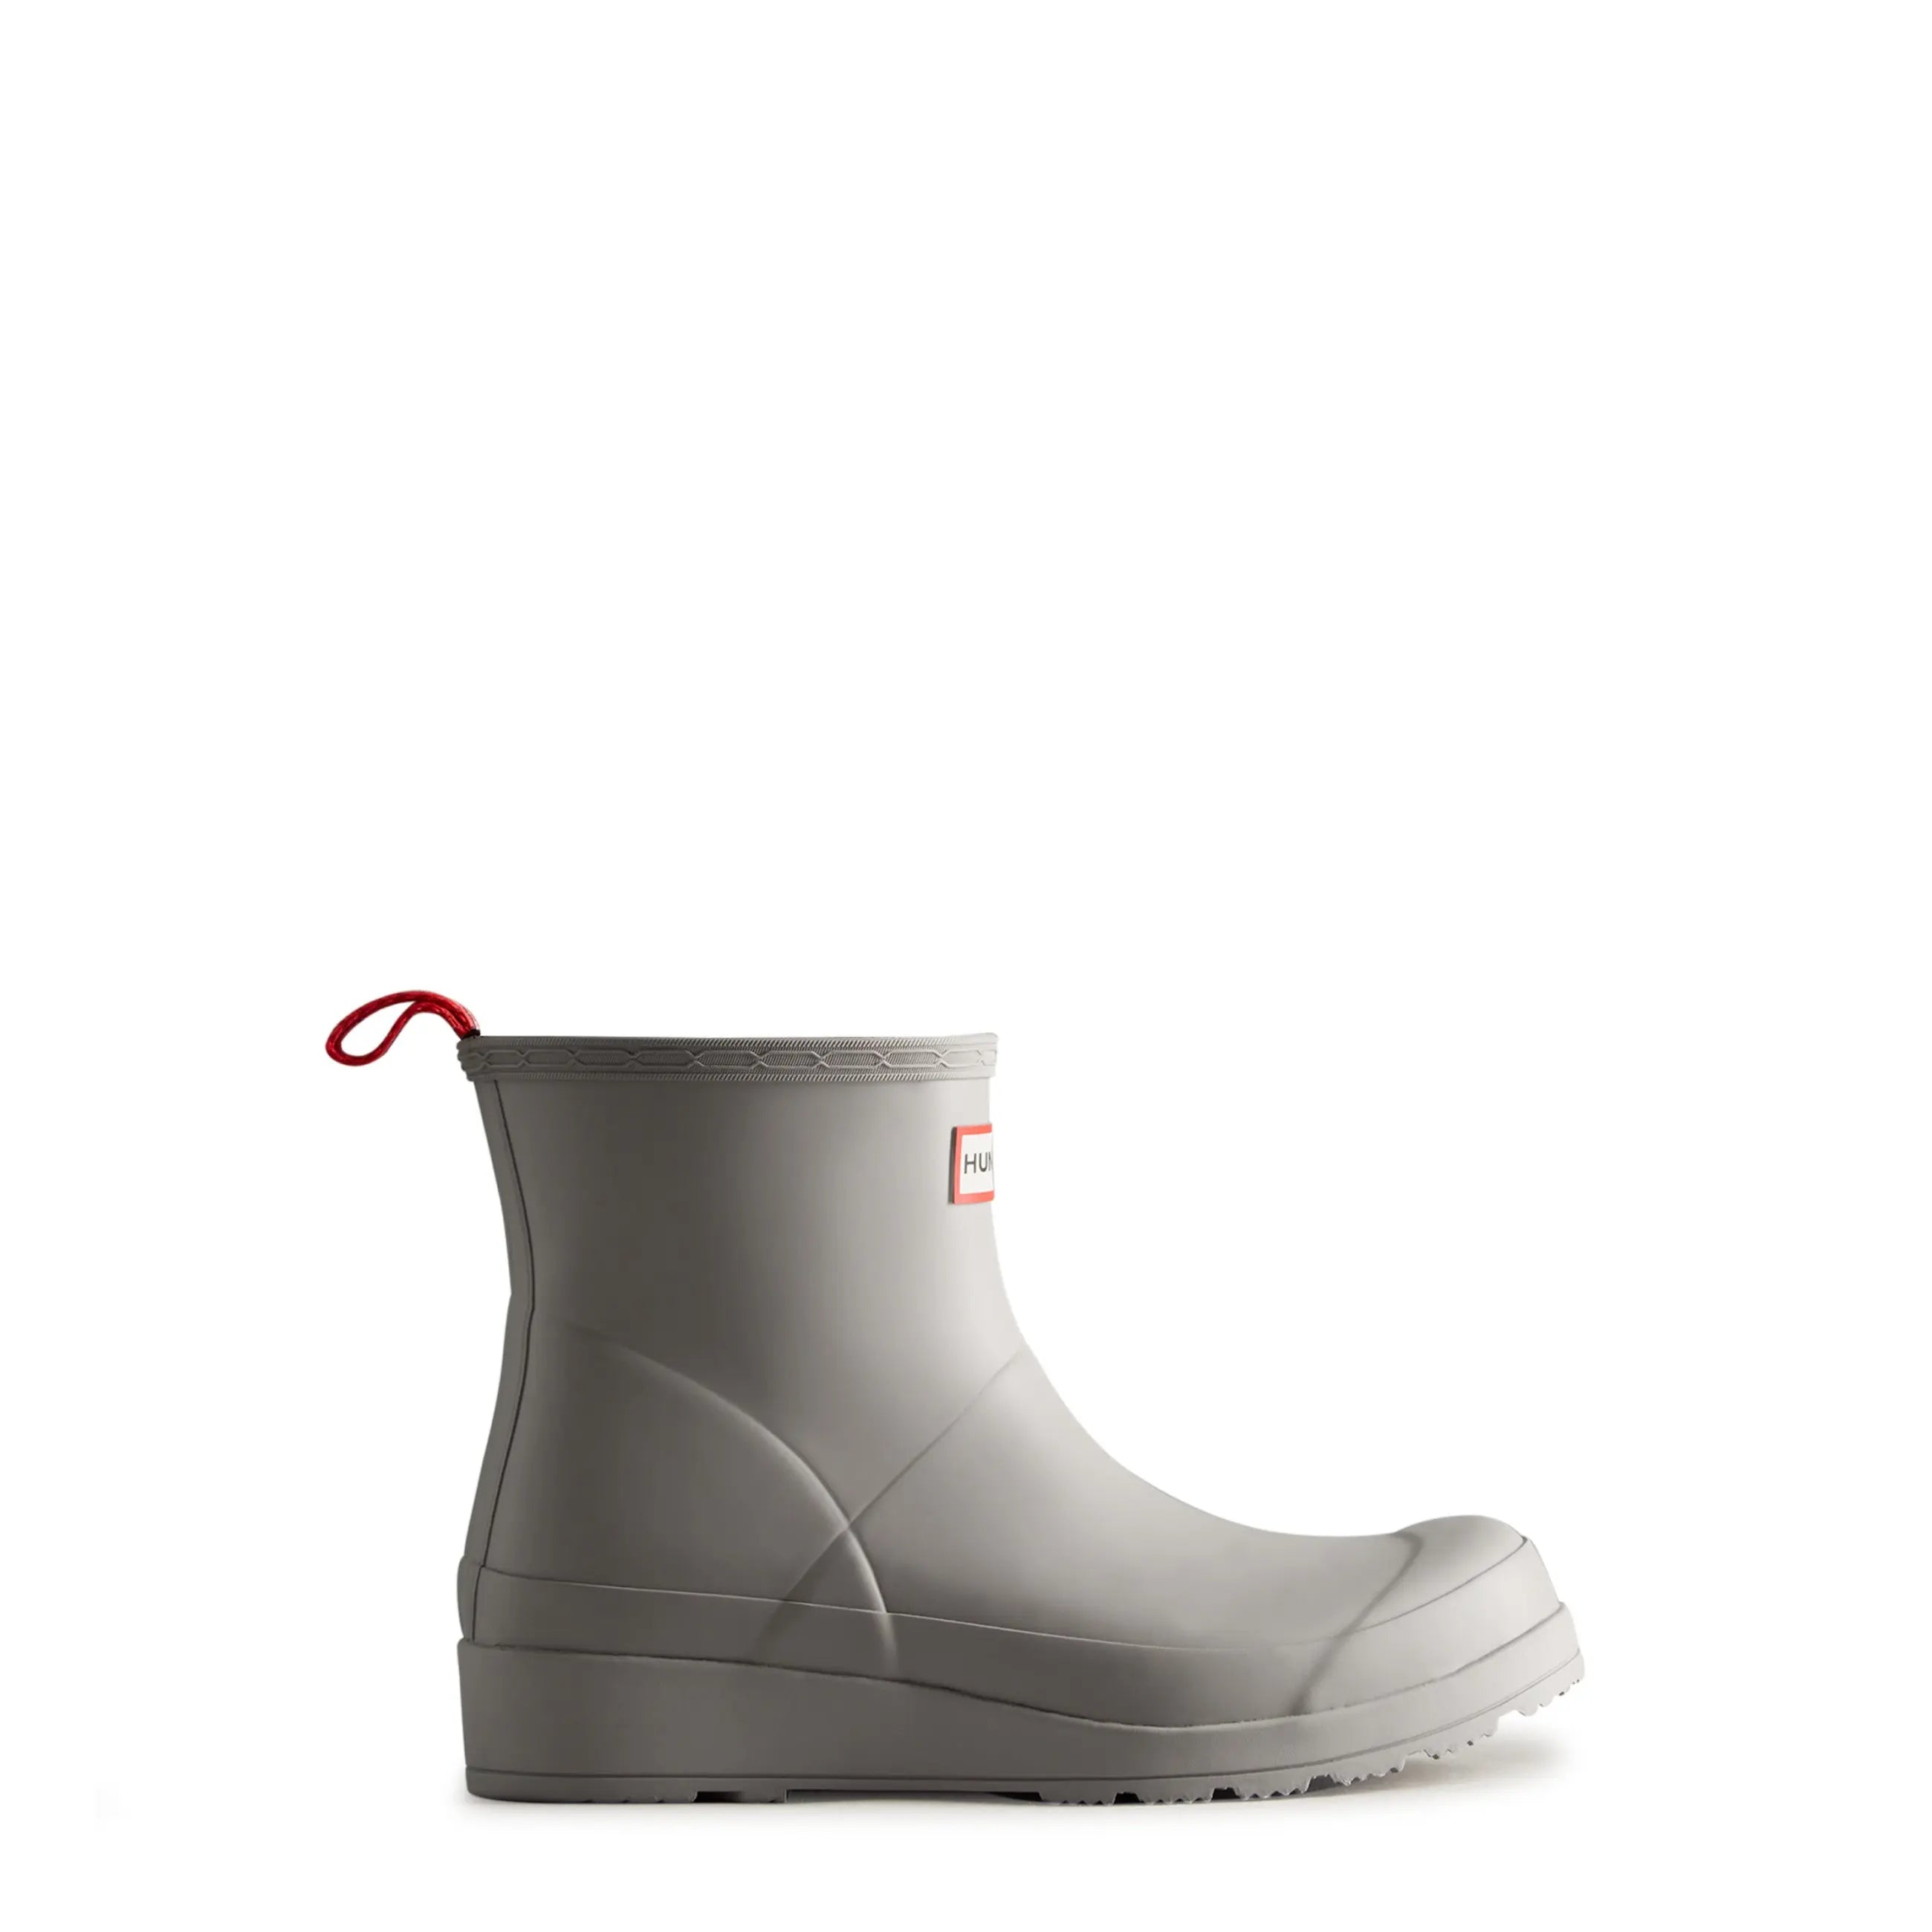 Women's PLAY™ Short Rain Boots - Hunter Boots Women's PLAY™ Short Rain Boots Zinc Hunter Boots Women's > Rain Boots > Play Boots